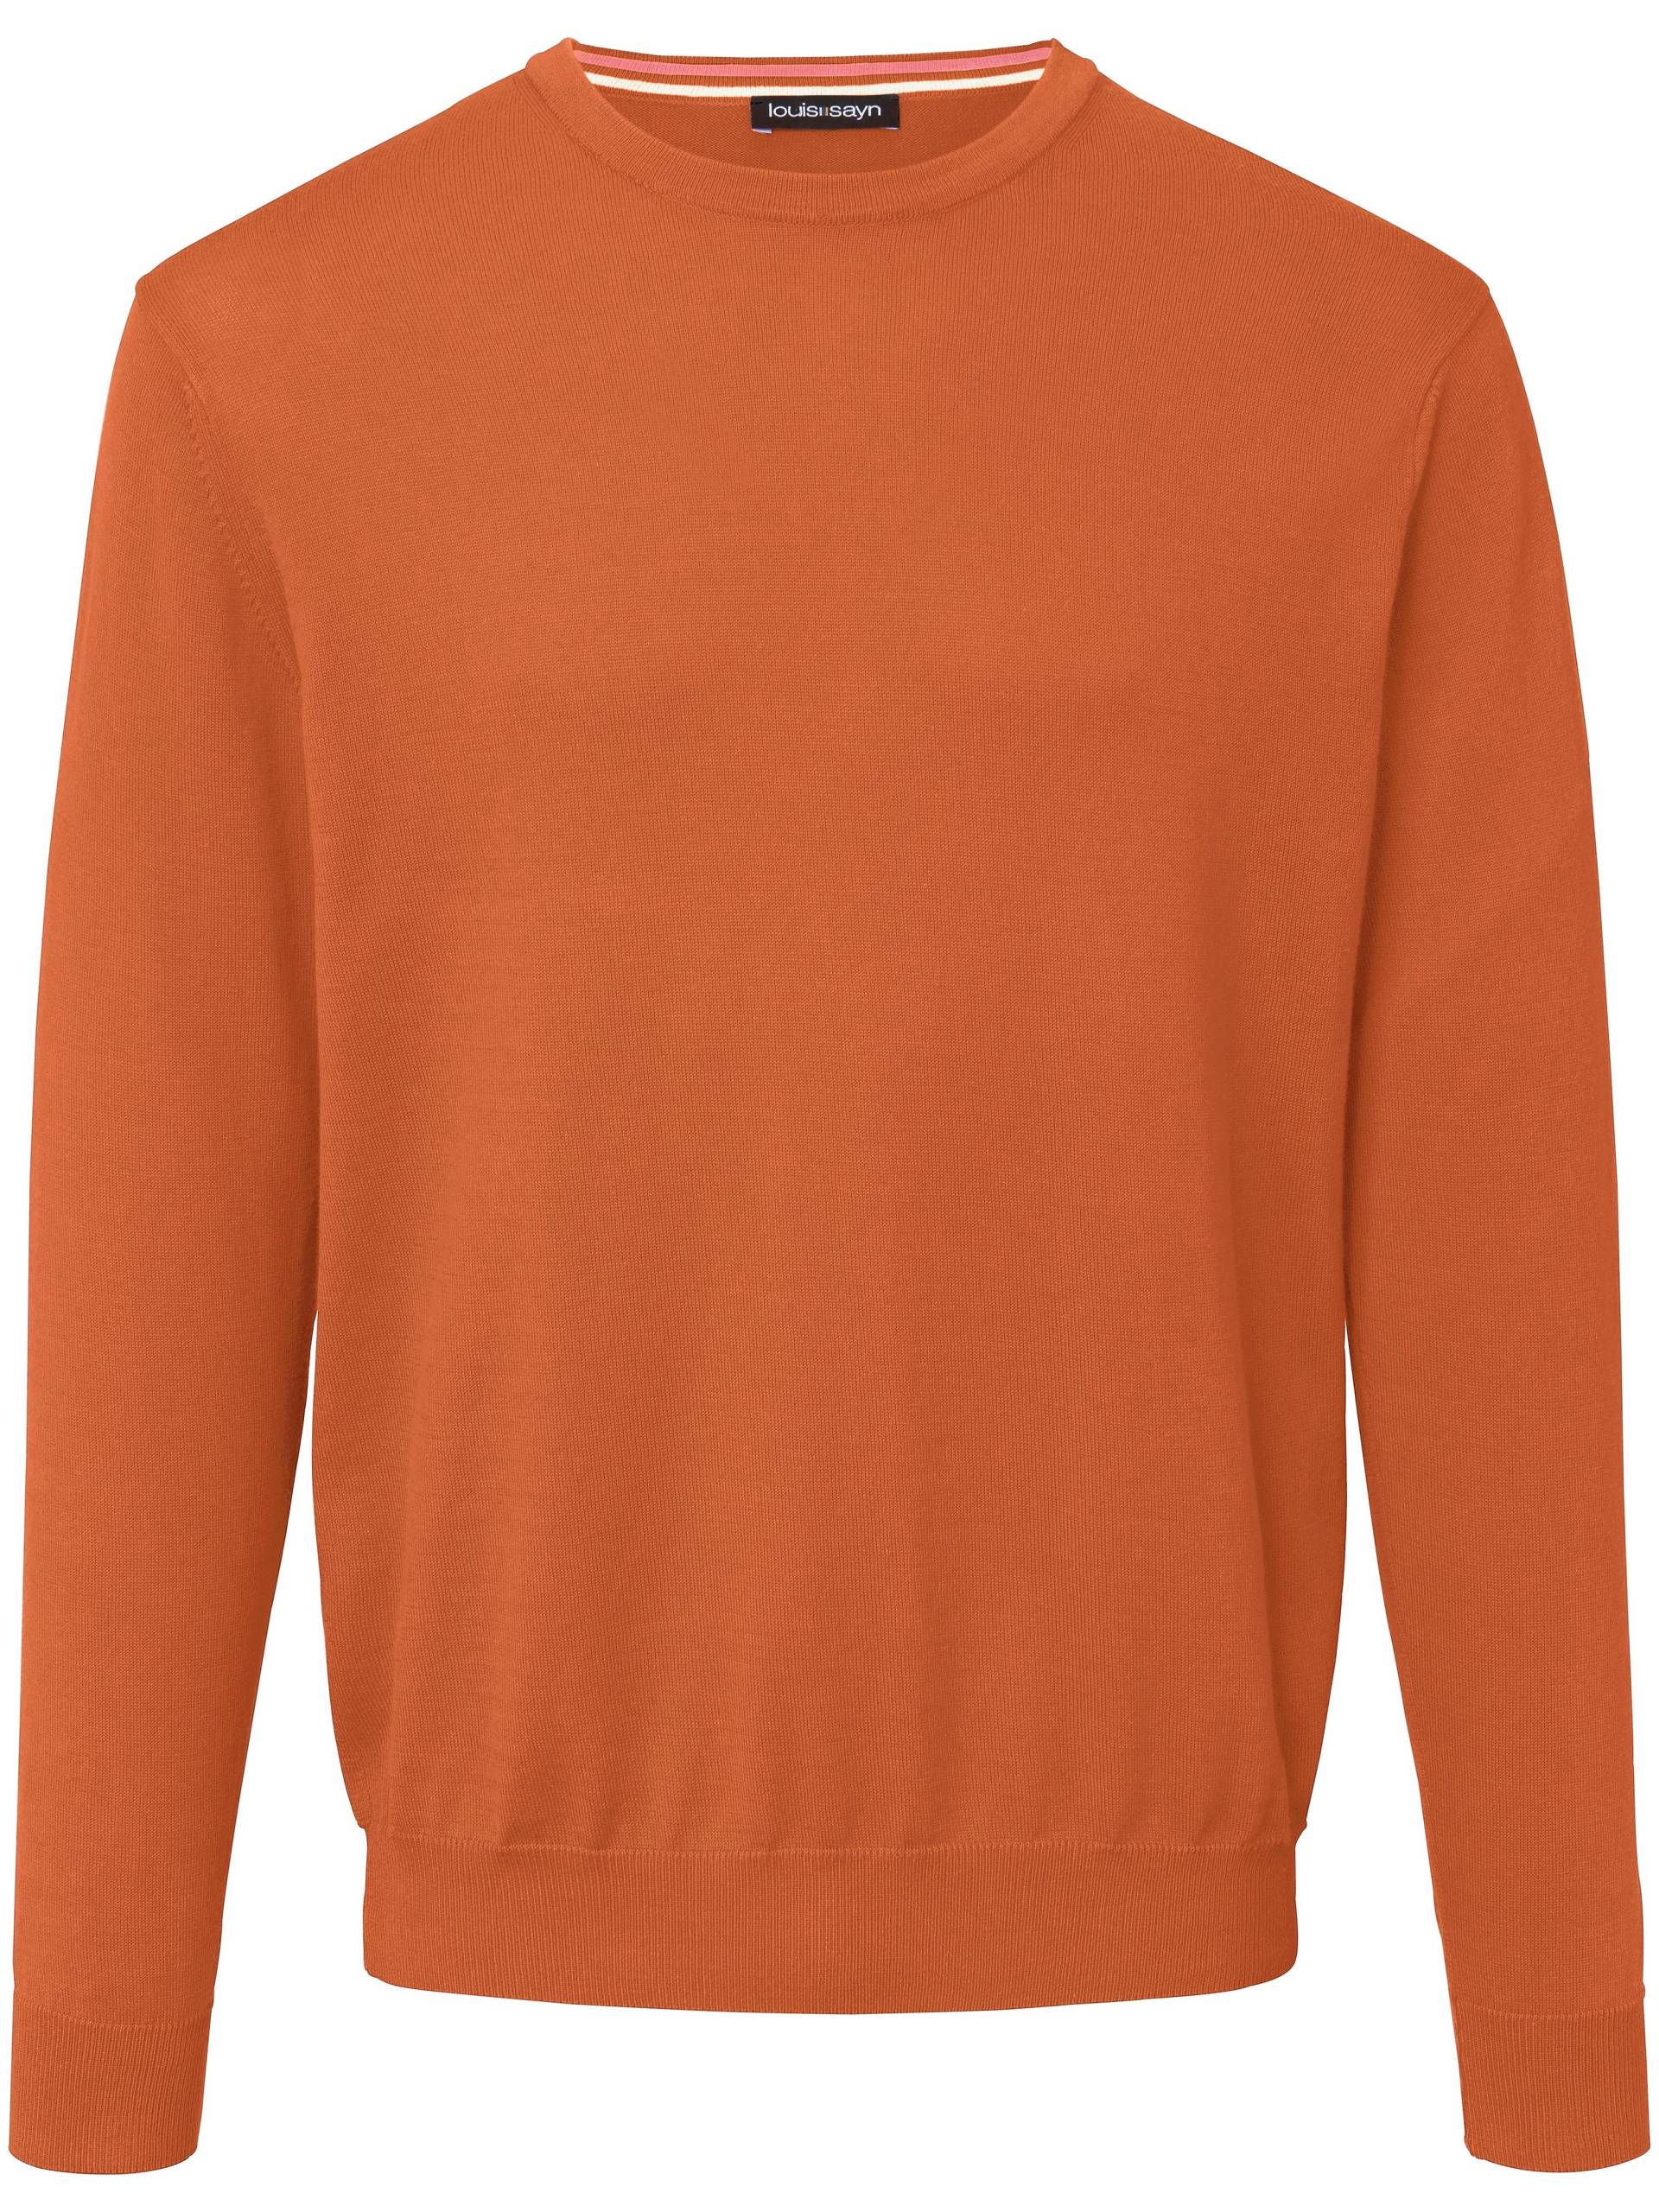 Pullover aus 100% Baumwolle Pima Cotton Louis Sayn orange Größe: 58 von Louis Sayn